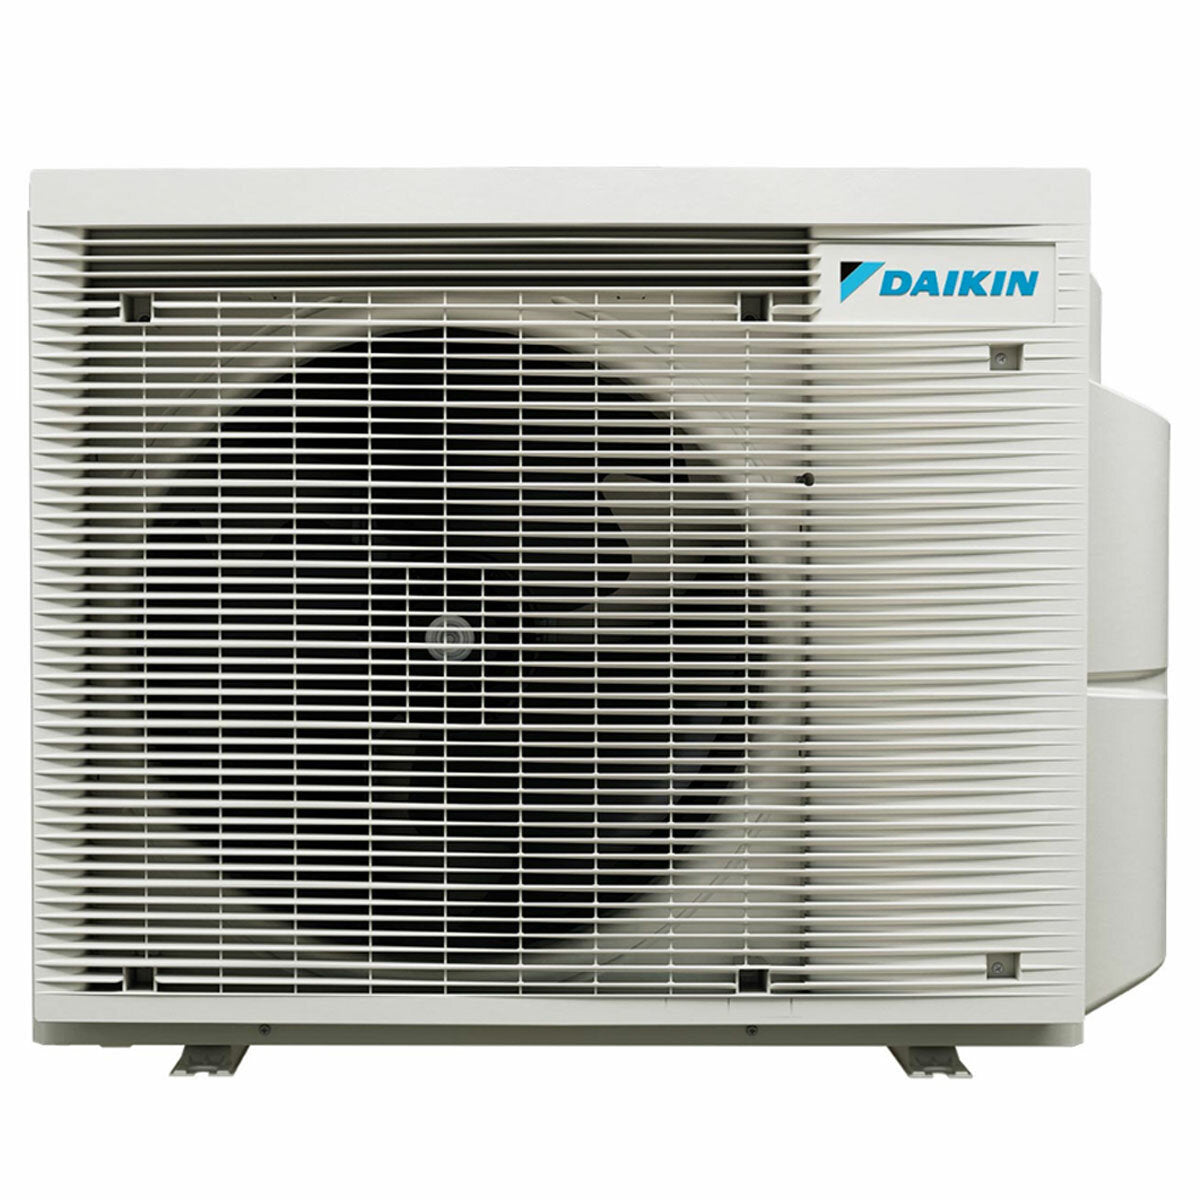 Daikin Emura 3 trial split air conditioner 7000+9000+9000 BTU inverter A++ wifi outdoor unit 4 kW White